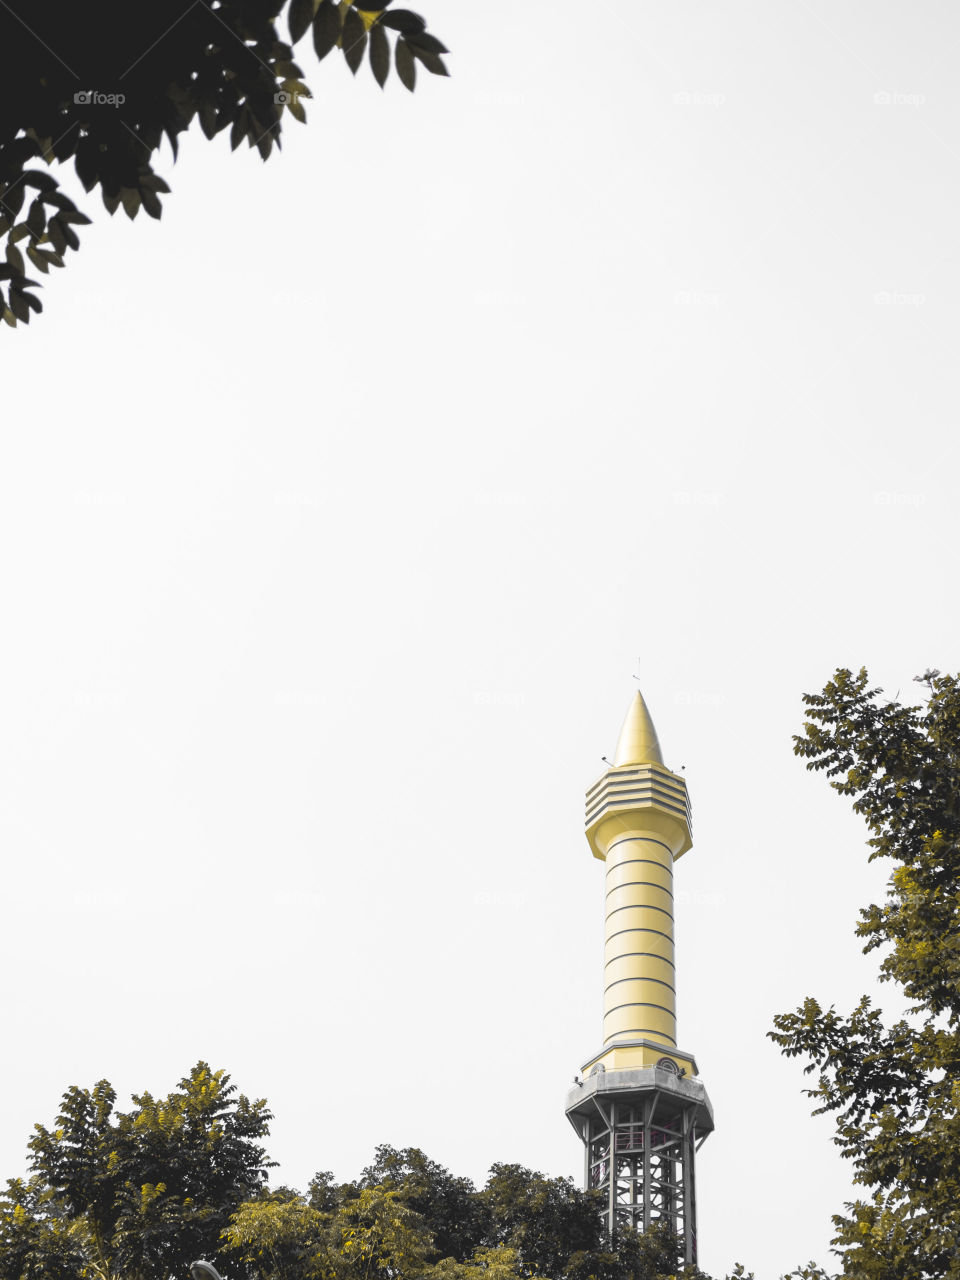 Yellow Tower